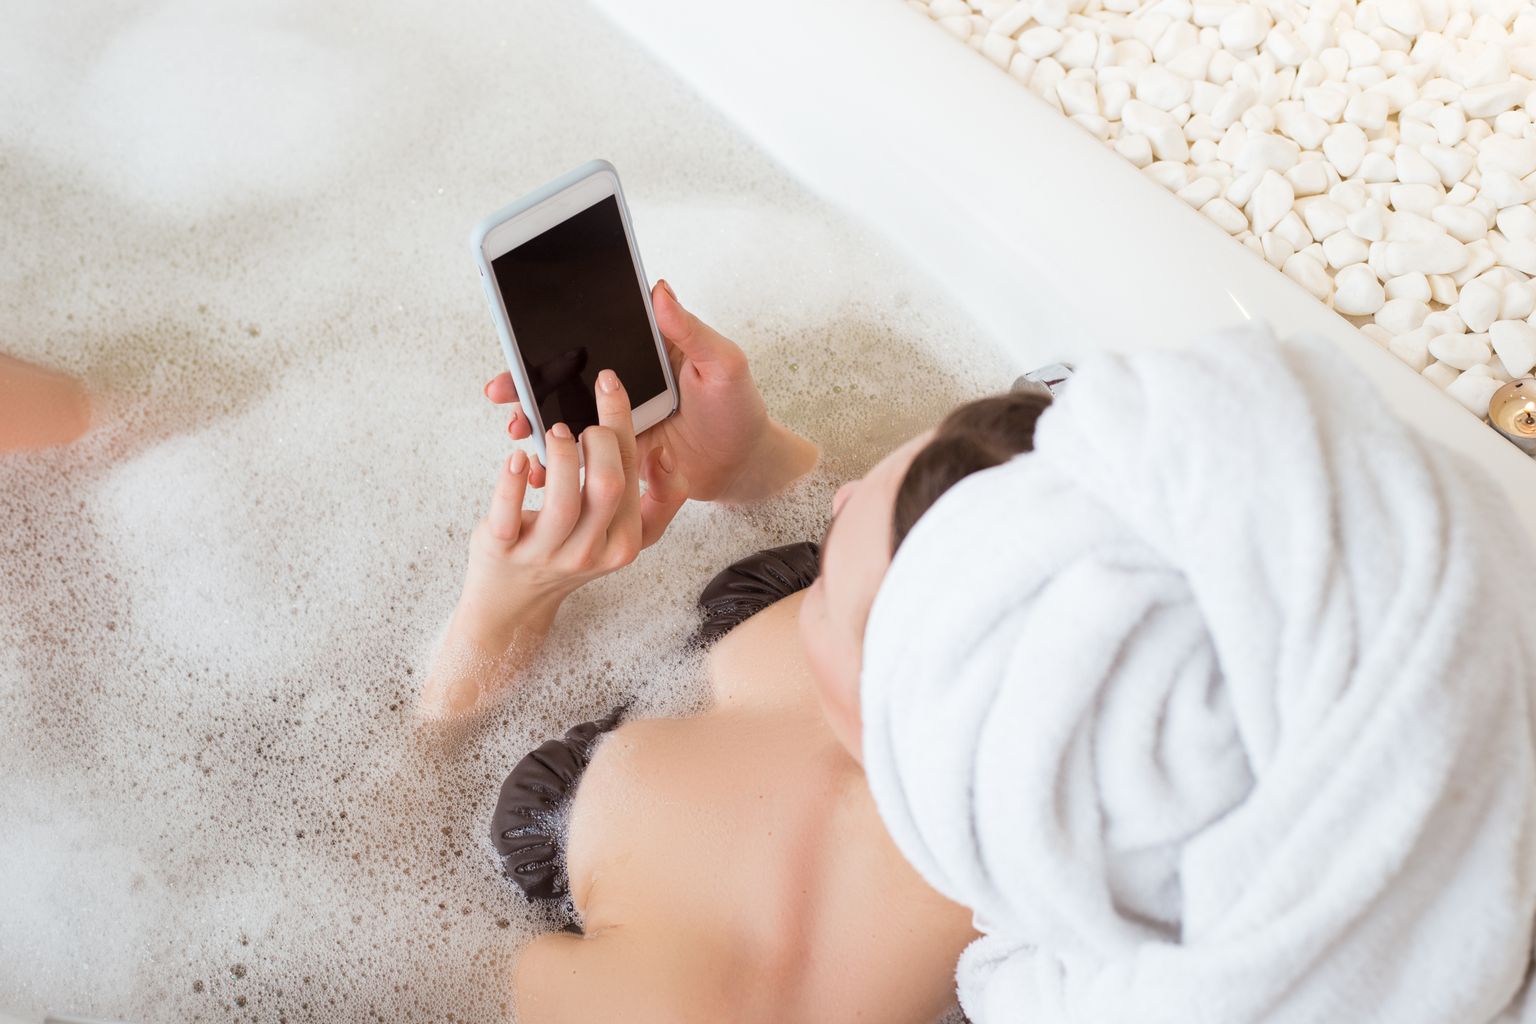 Pilt on illustreeriv: naine telefoniga vannis.